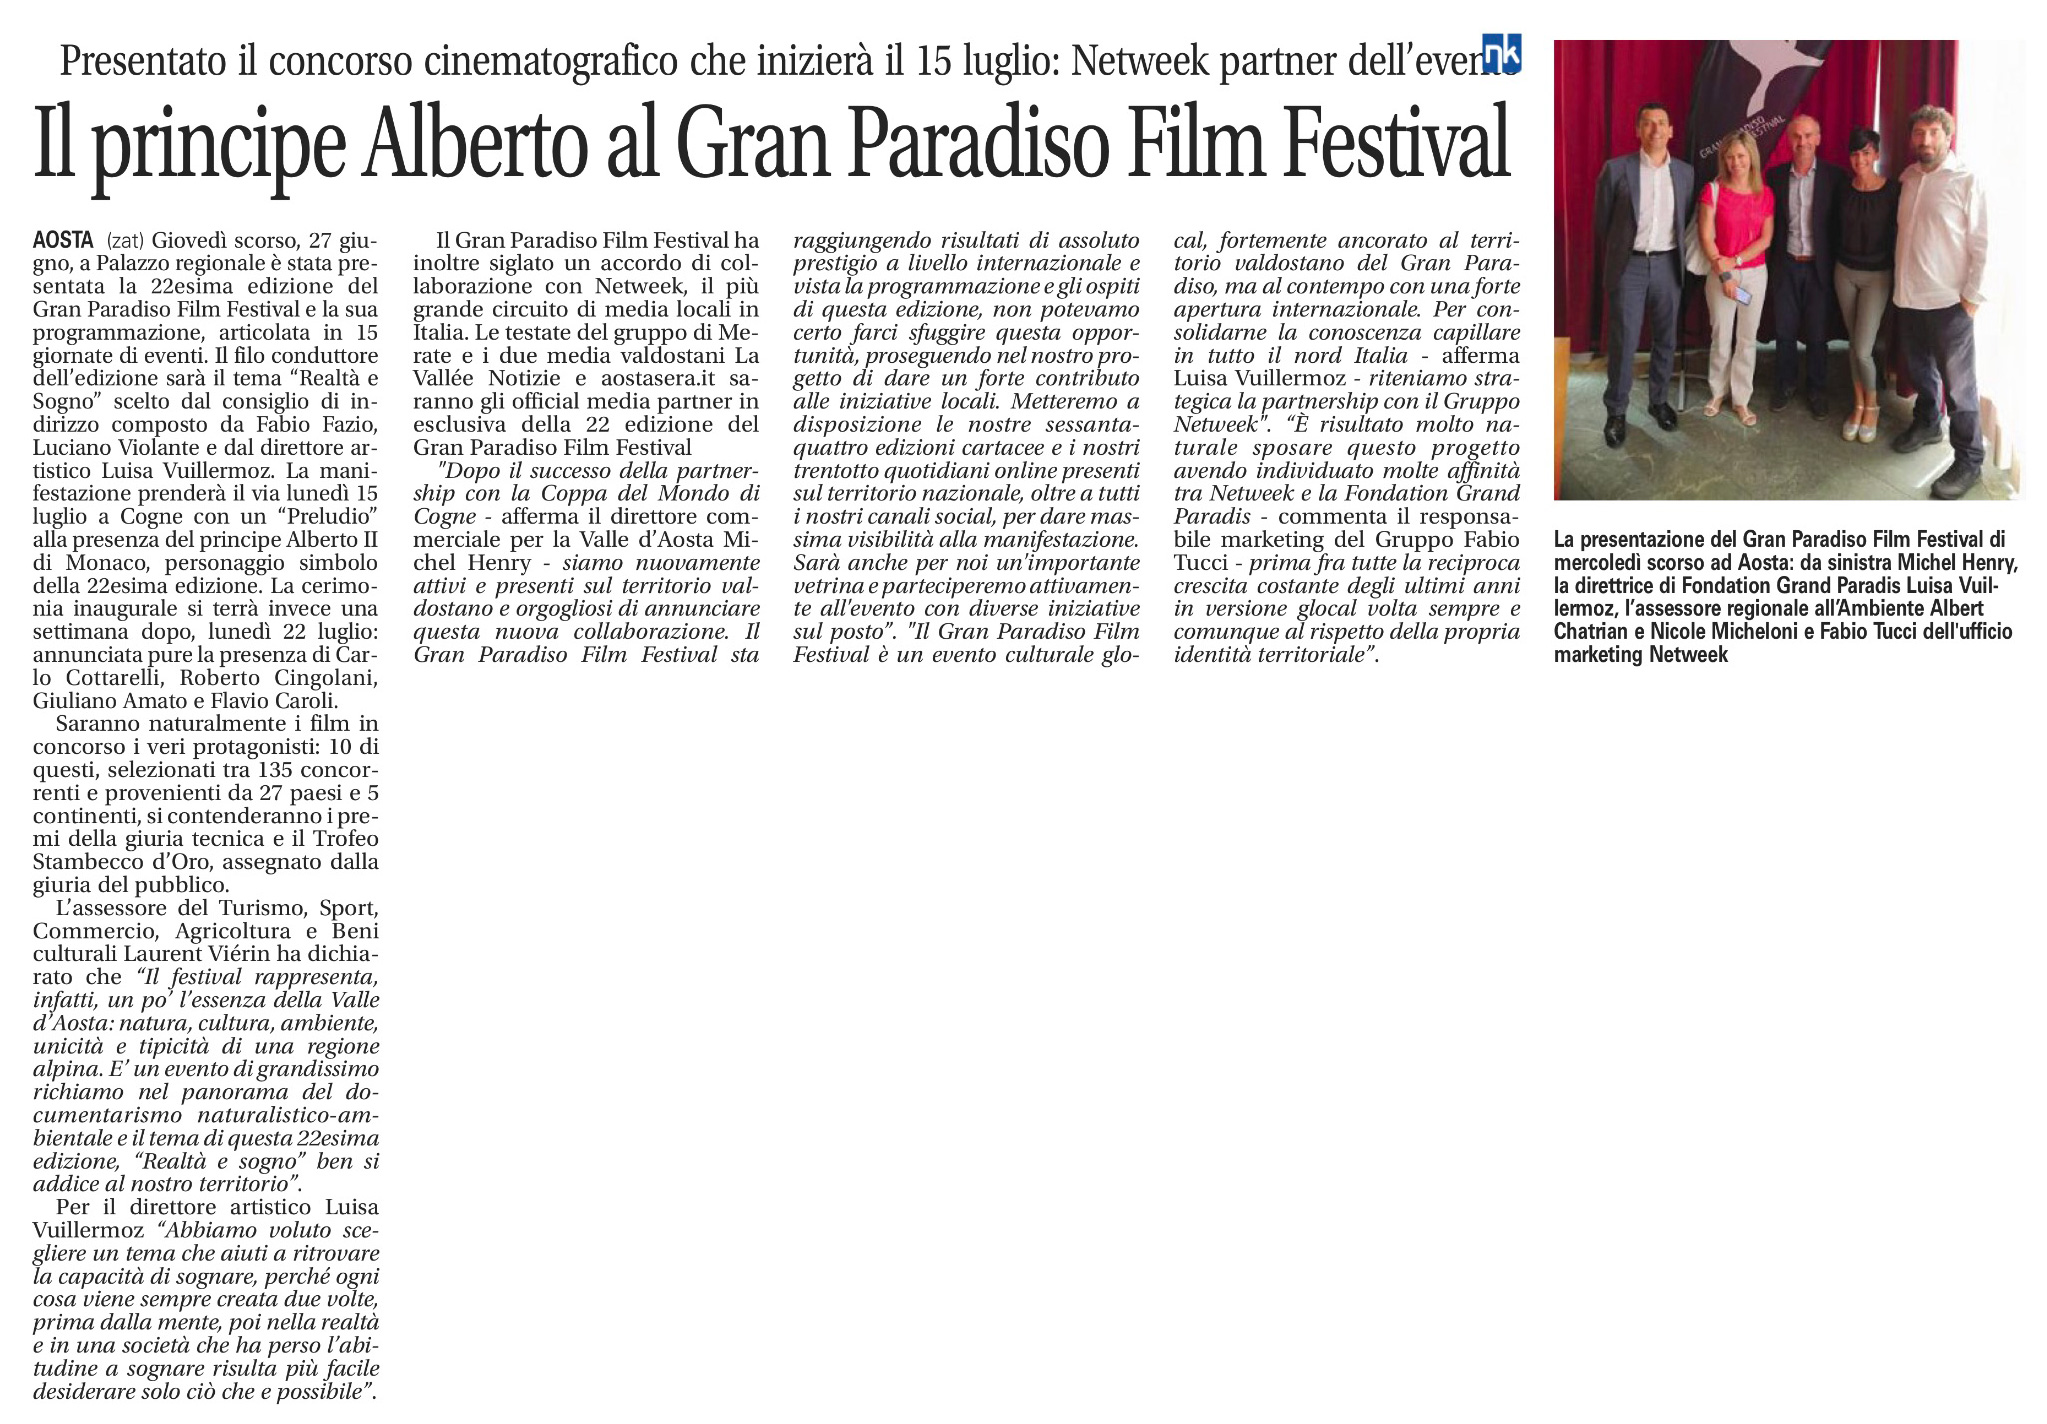 Il principe Alberto al Gran Paradiso Film Festival